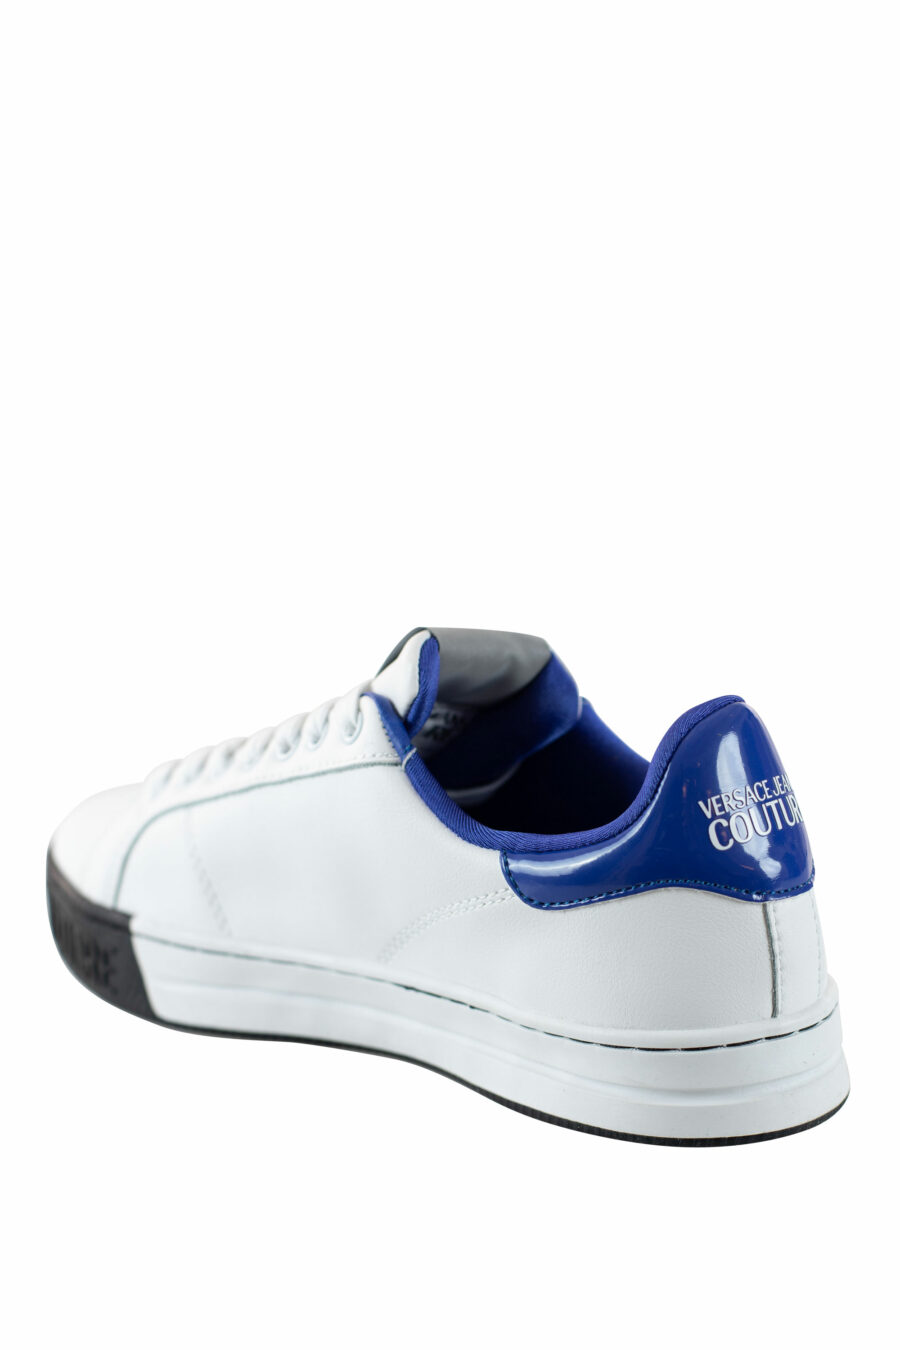 Weiße Turnschuhe mit blauem und rundem Logo - IMG 4506